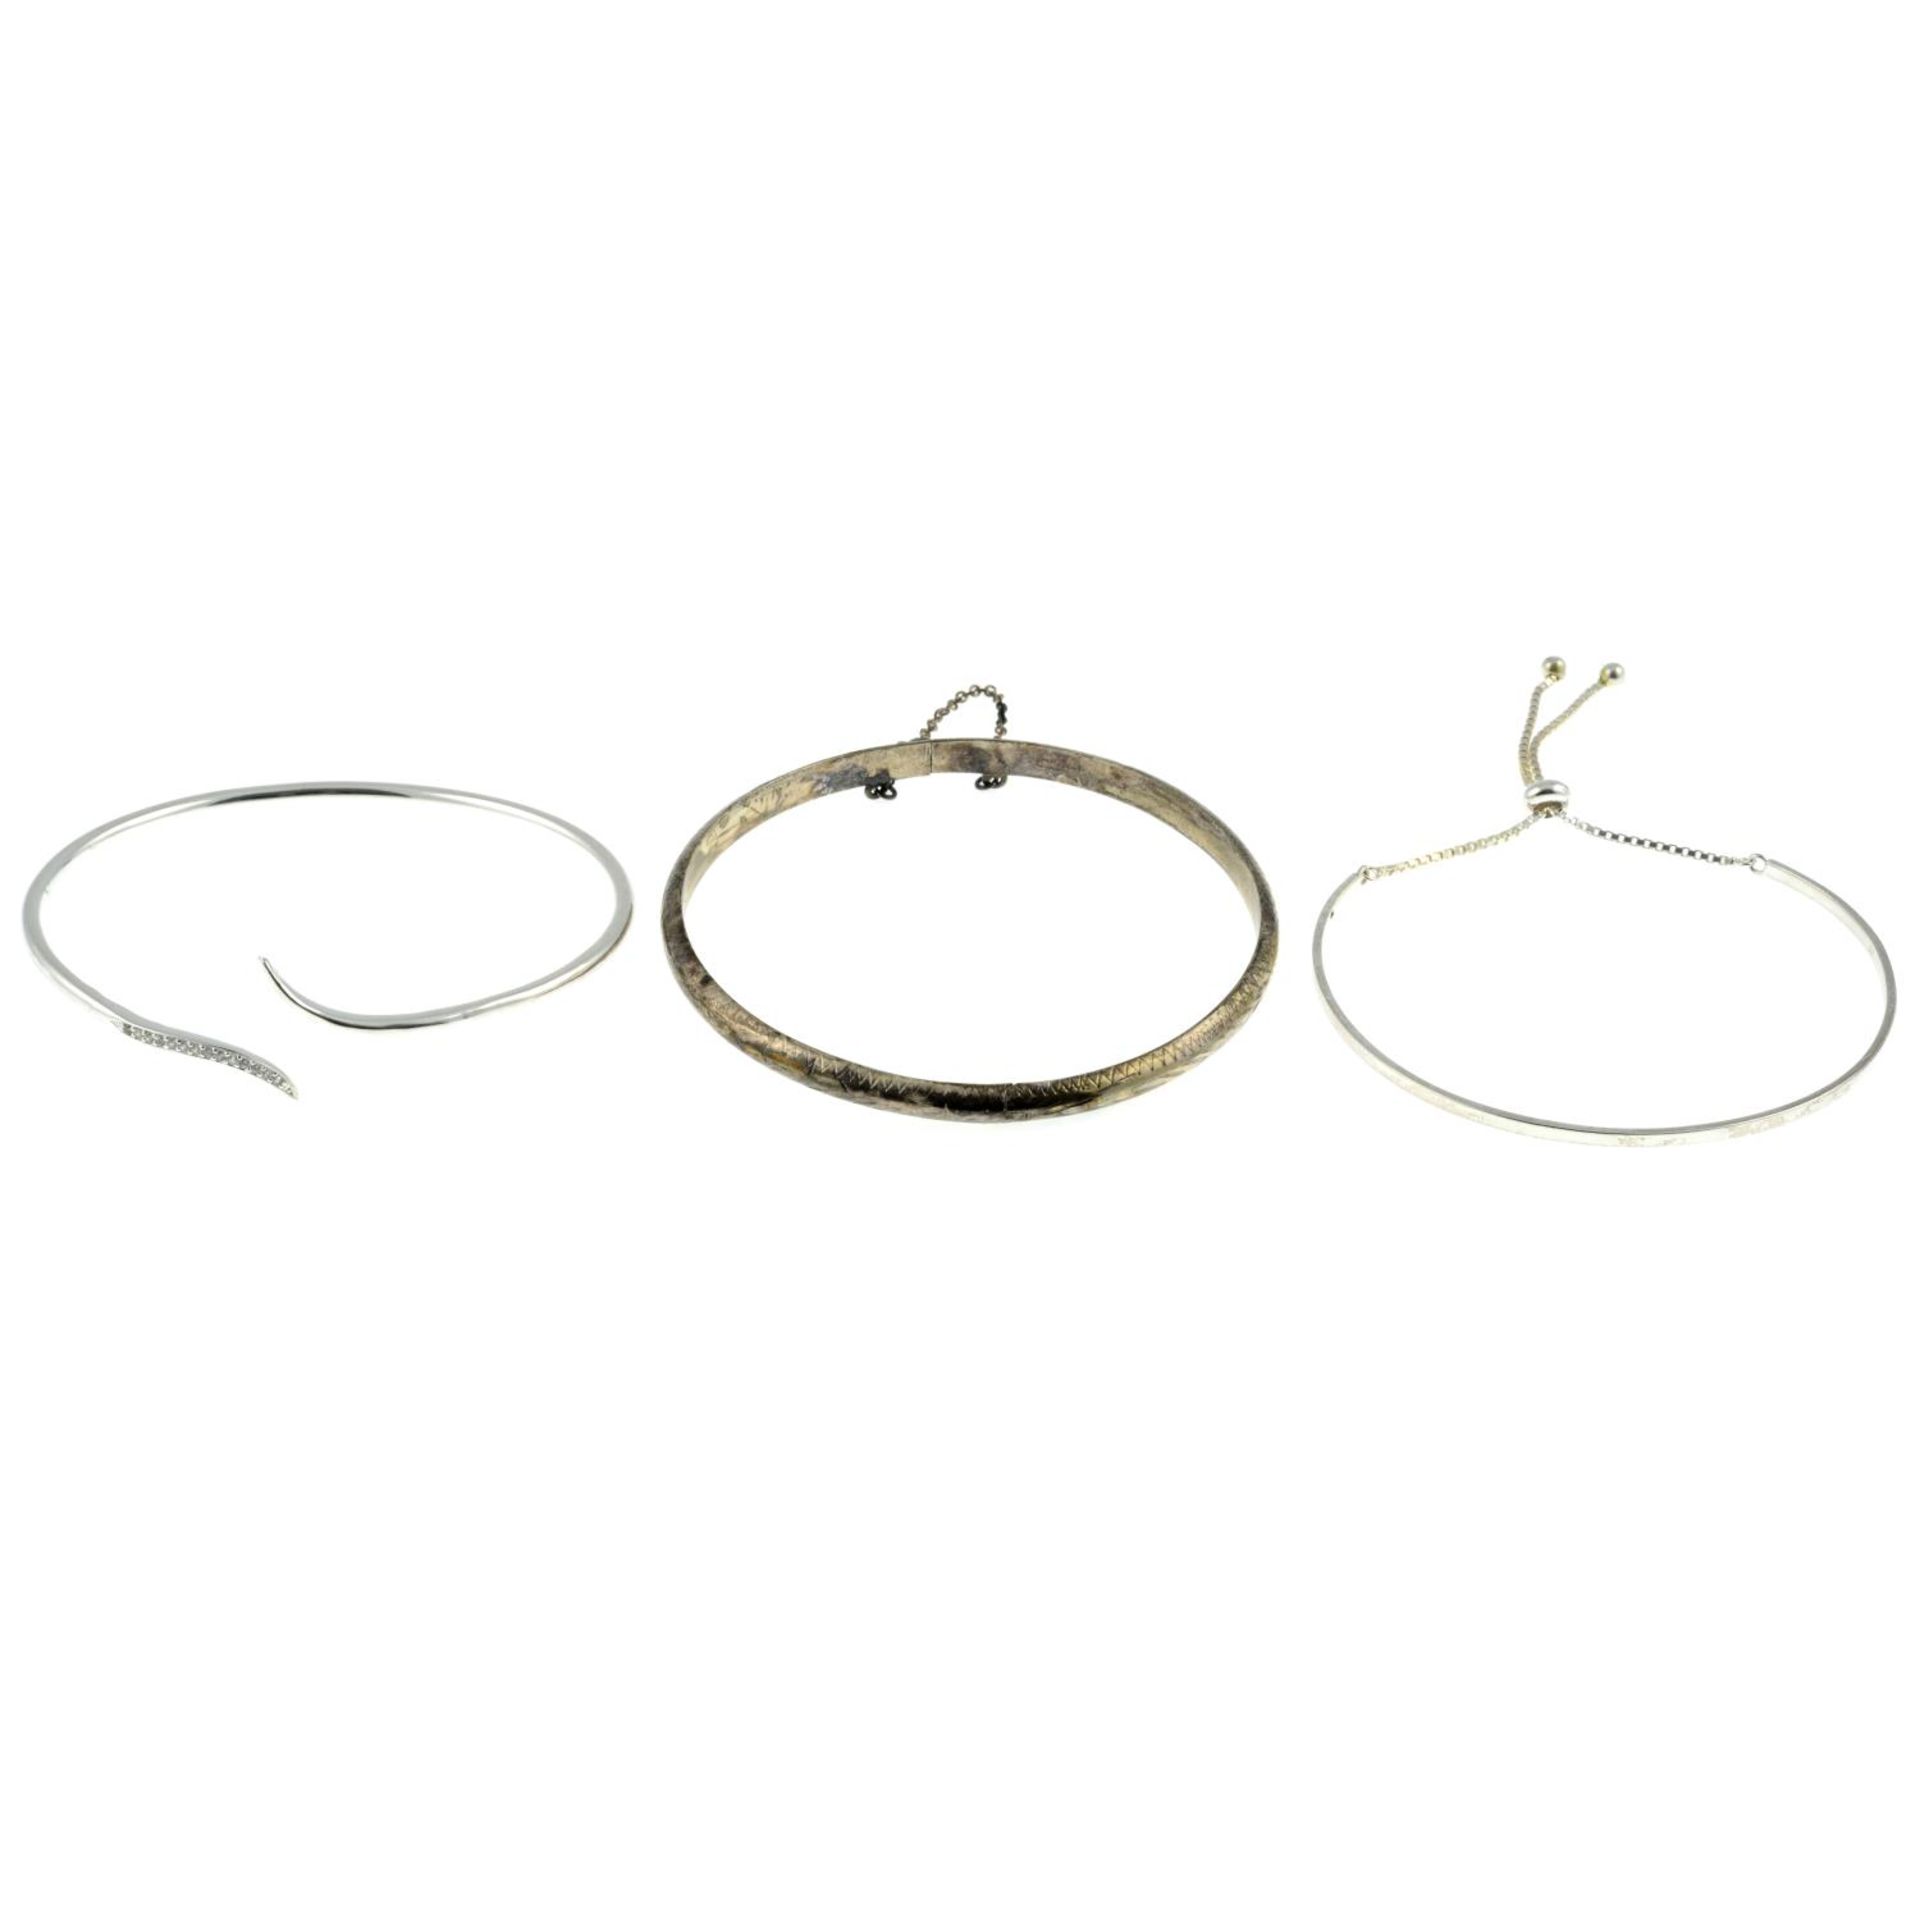 A selection of bracelets, - Image 2 of 3